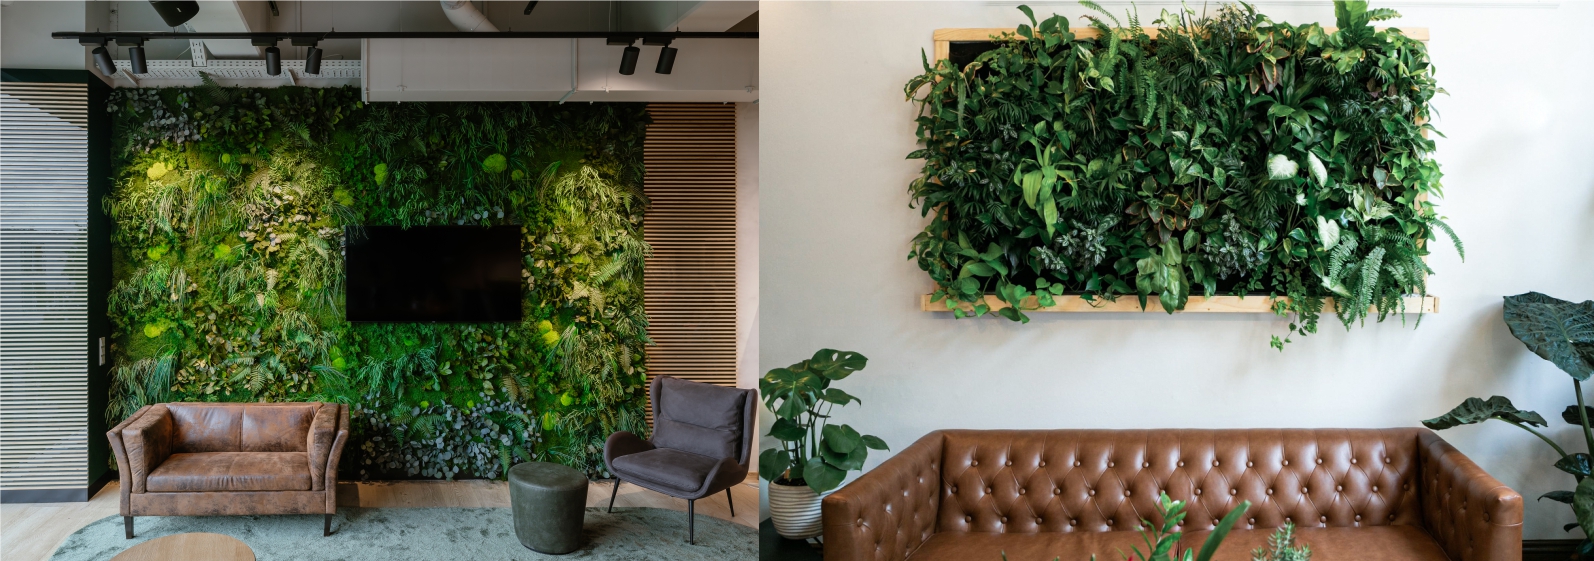 Bild einer lebenden Pflanzenwand und einer präparierten Pflanzenwand